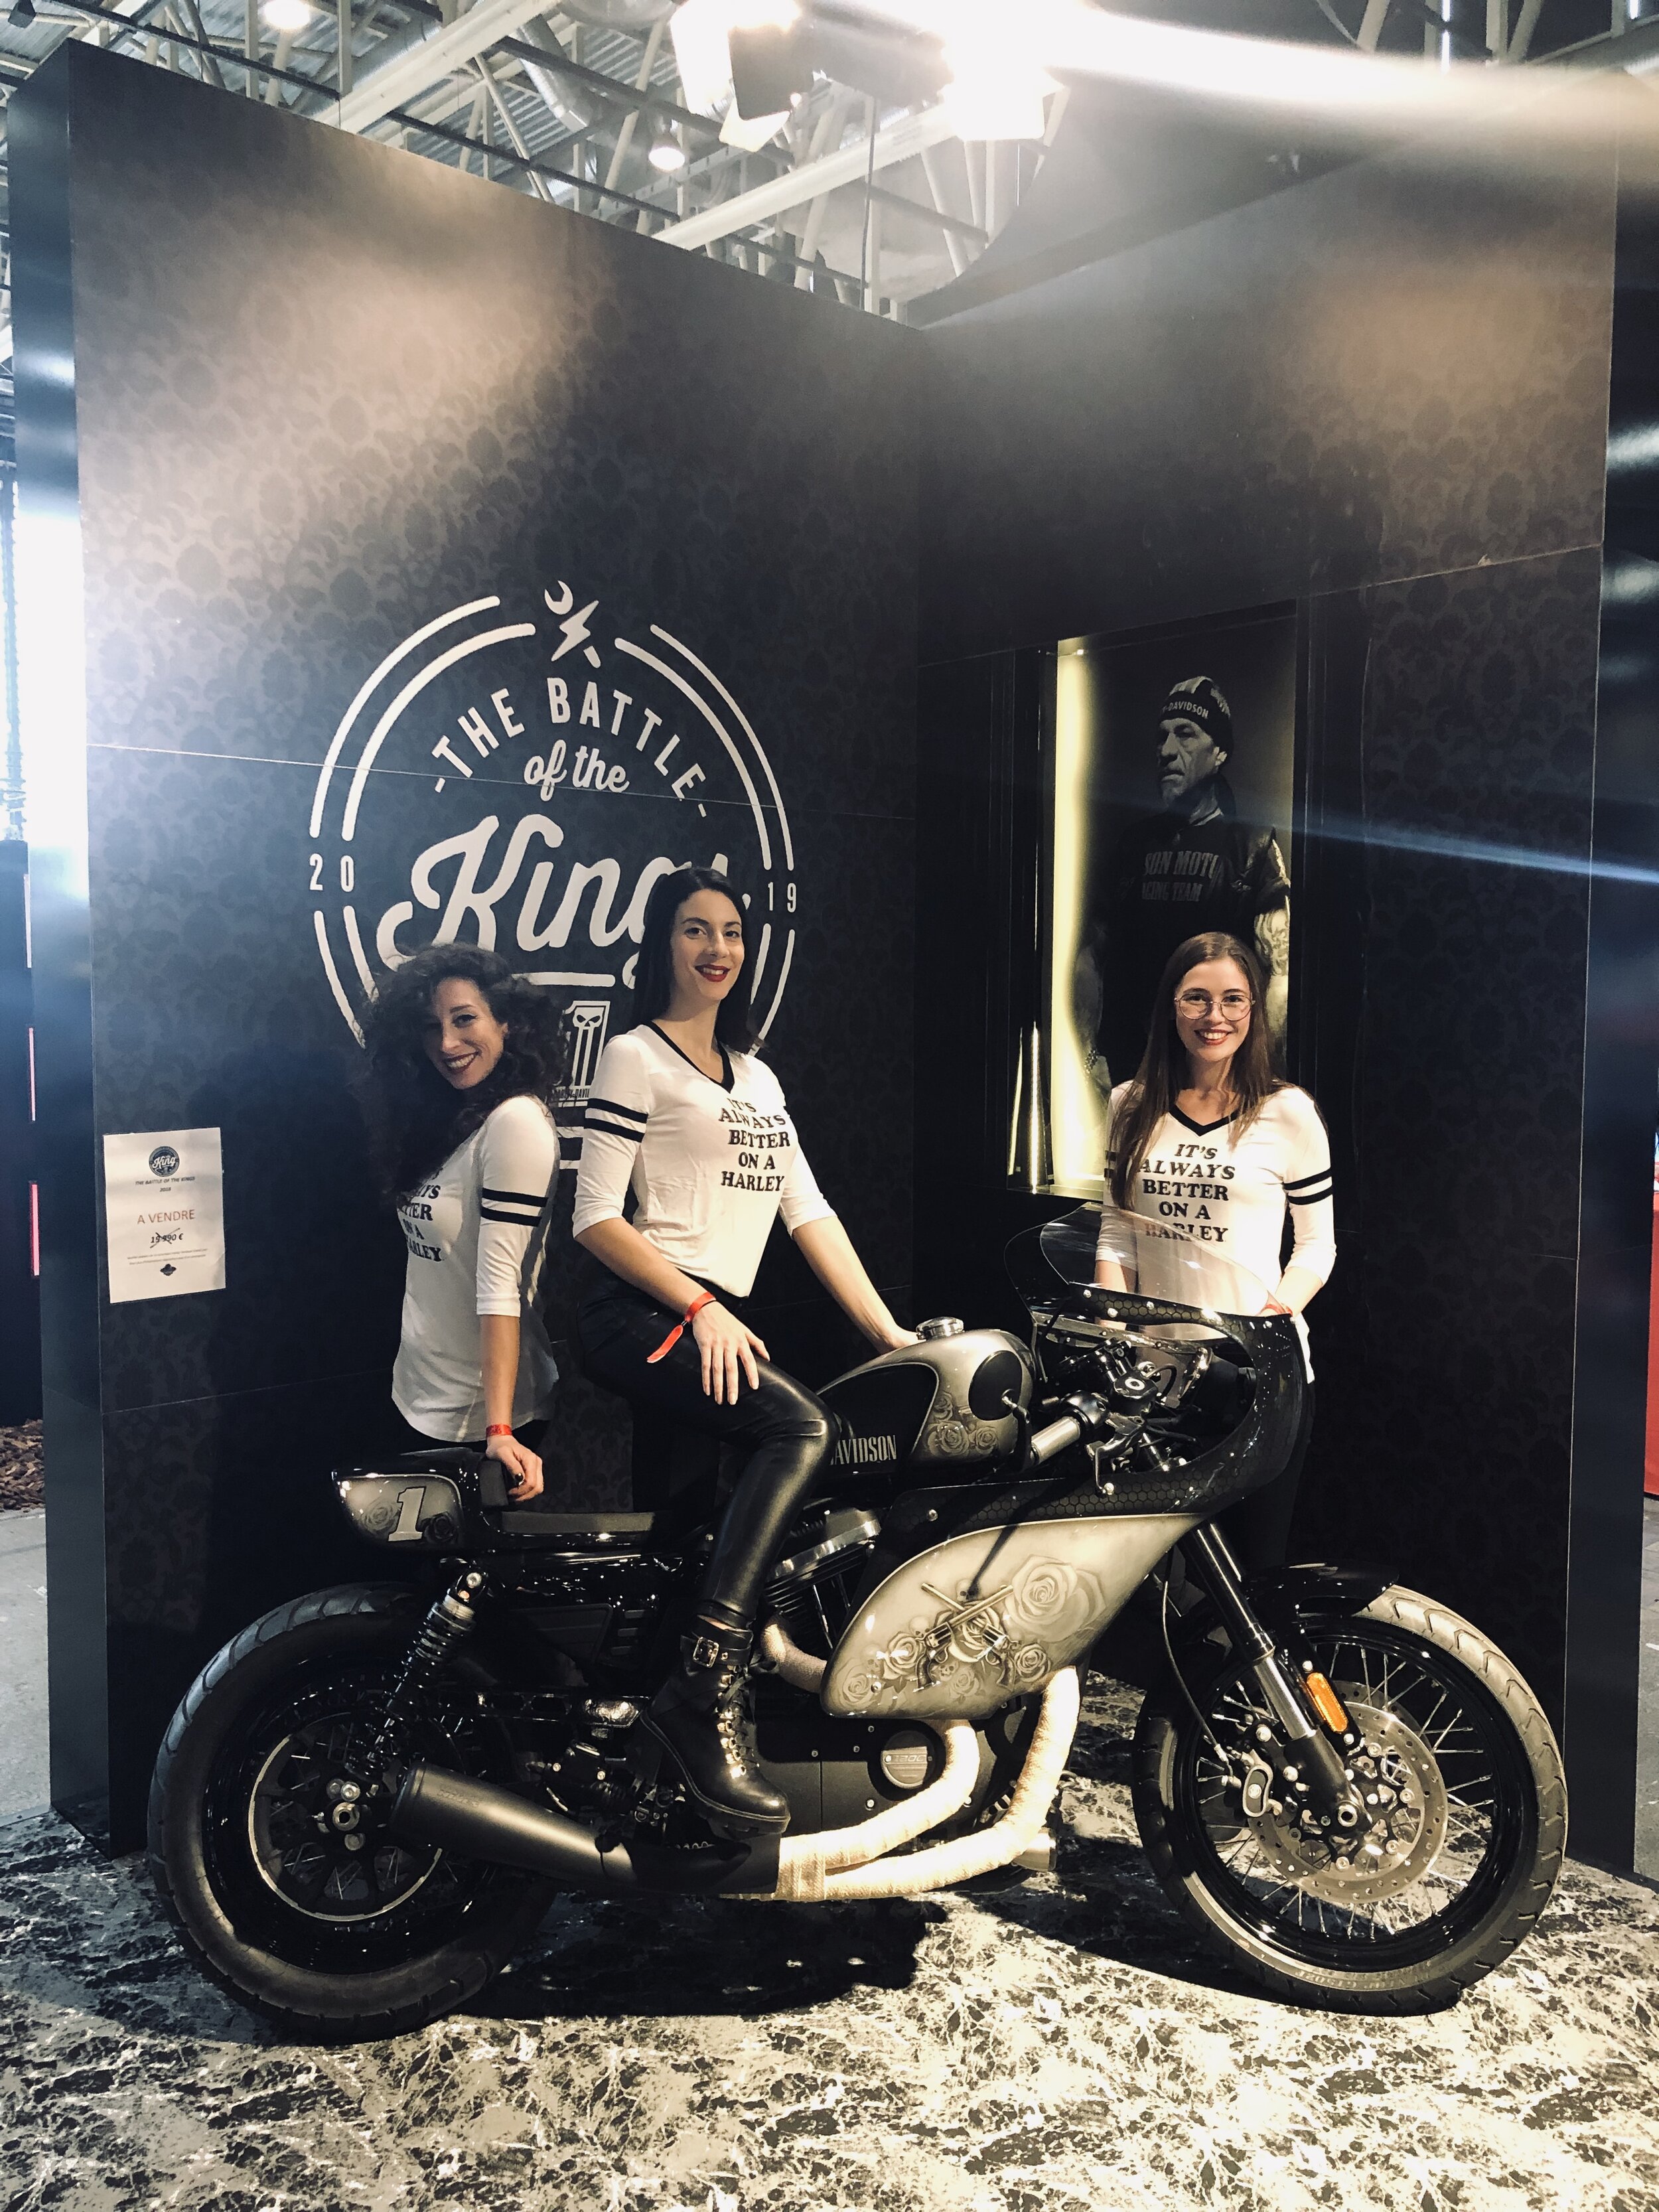 Salon du 2 roues de Lyon 2019 - Harley Davidson